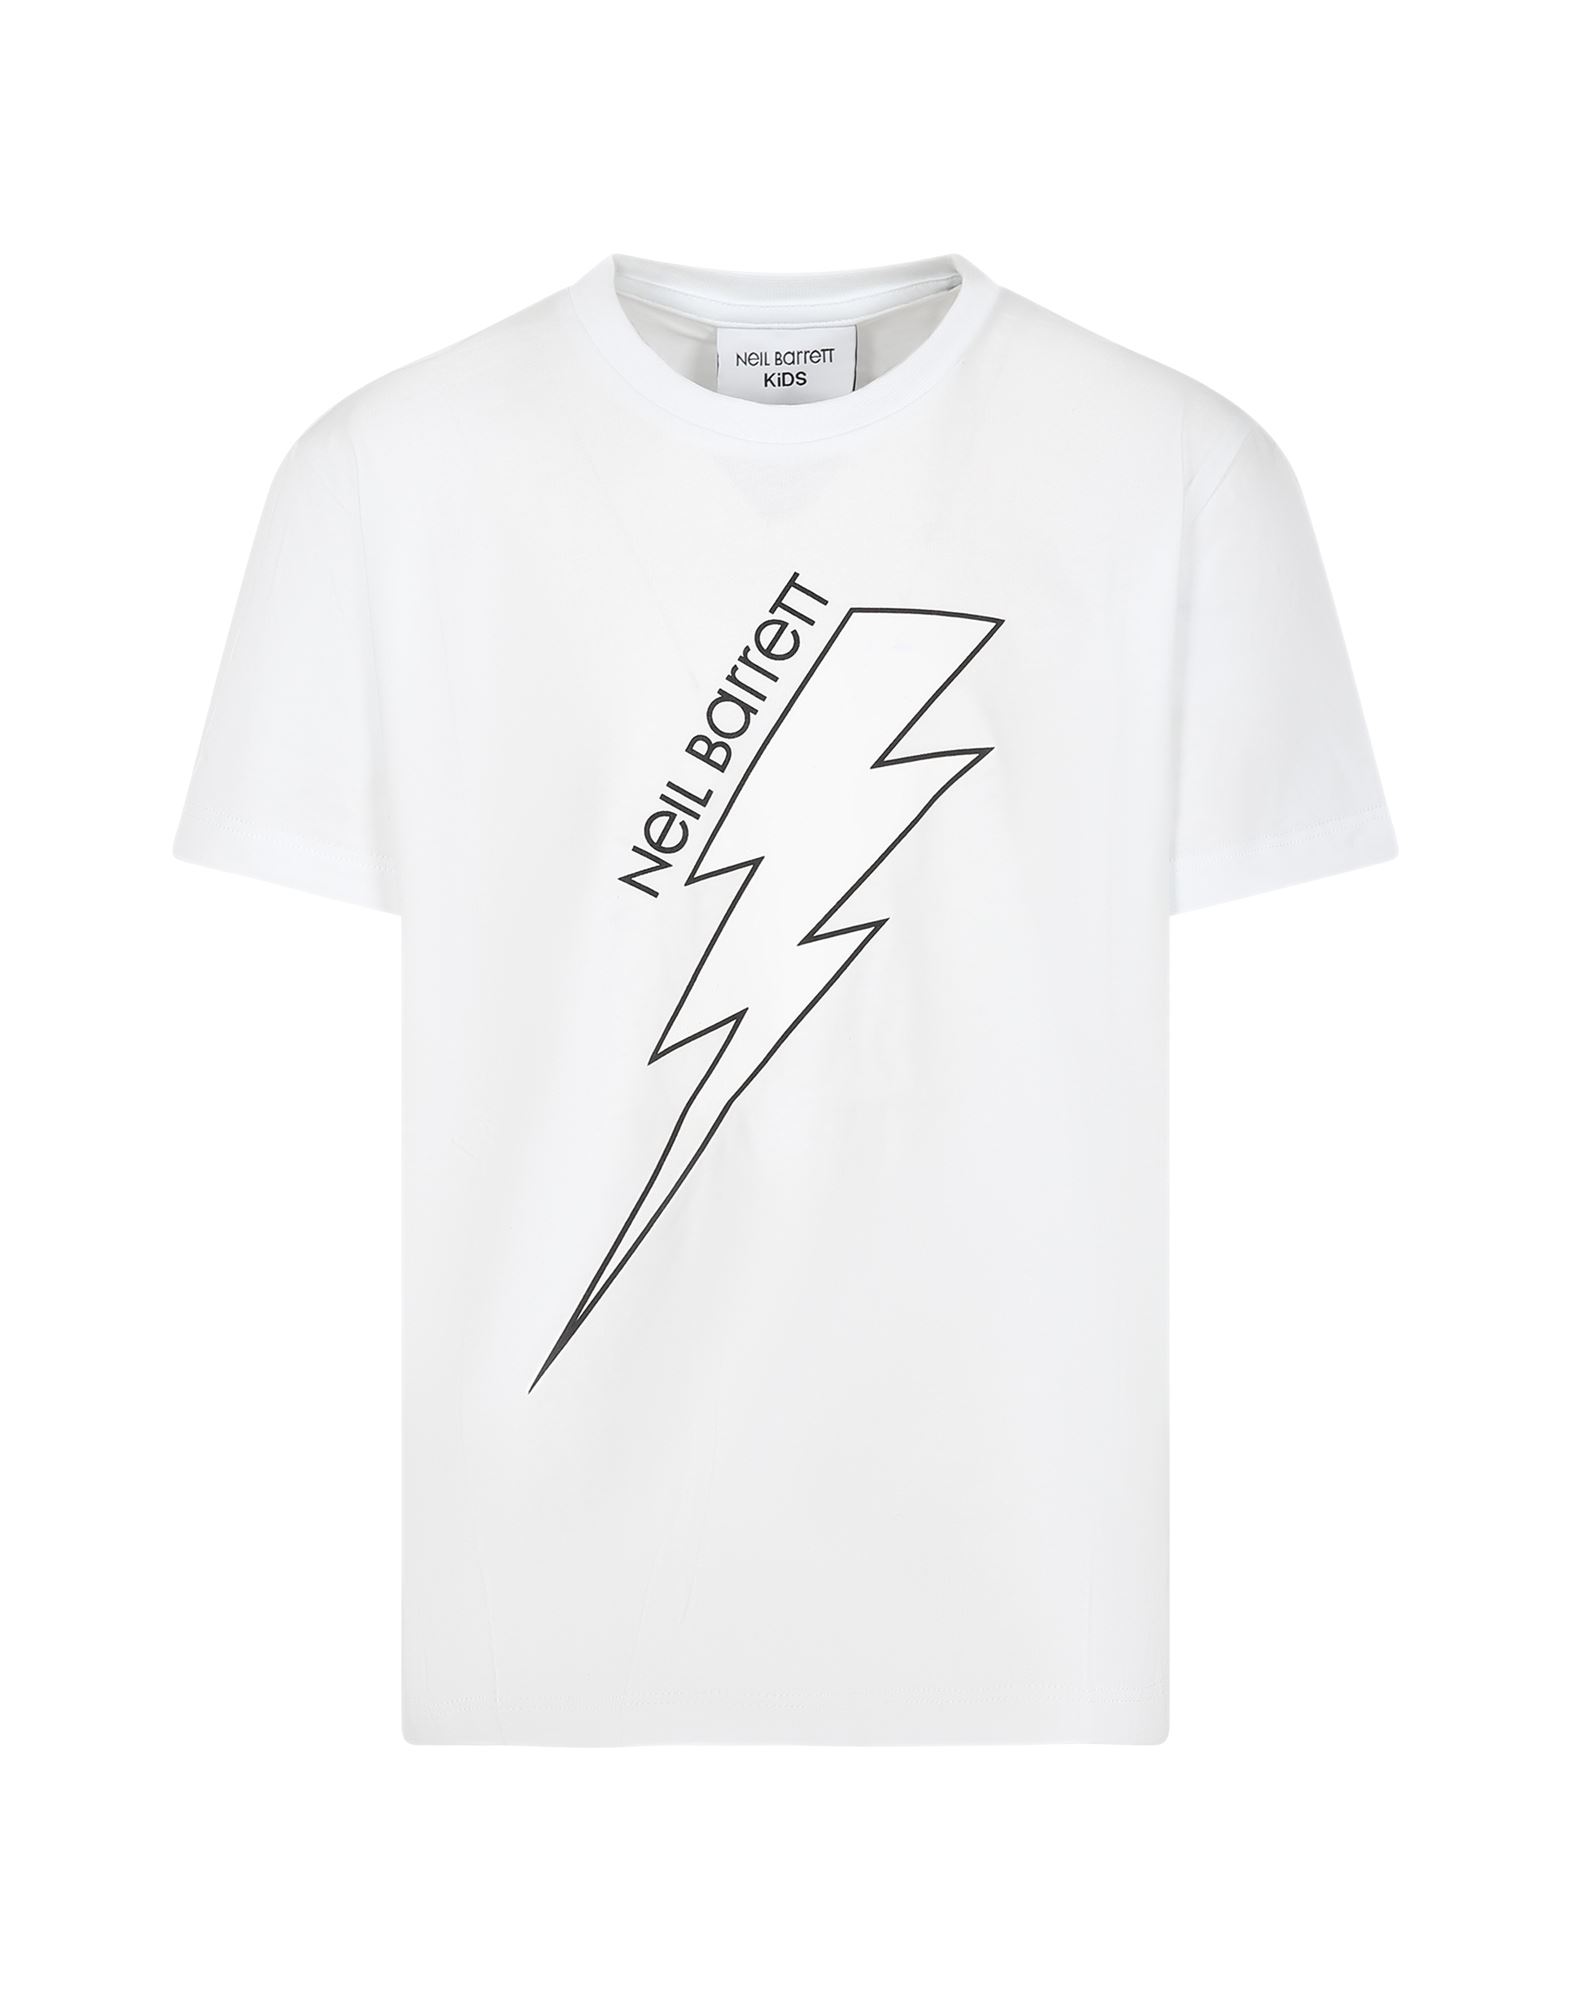 NEIL BARRETT T-shirts Herren Weiß von NEIL BARRETT